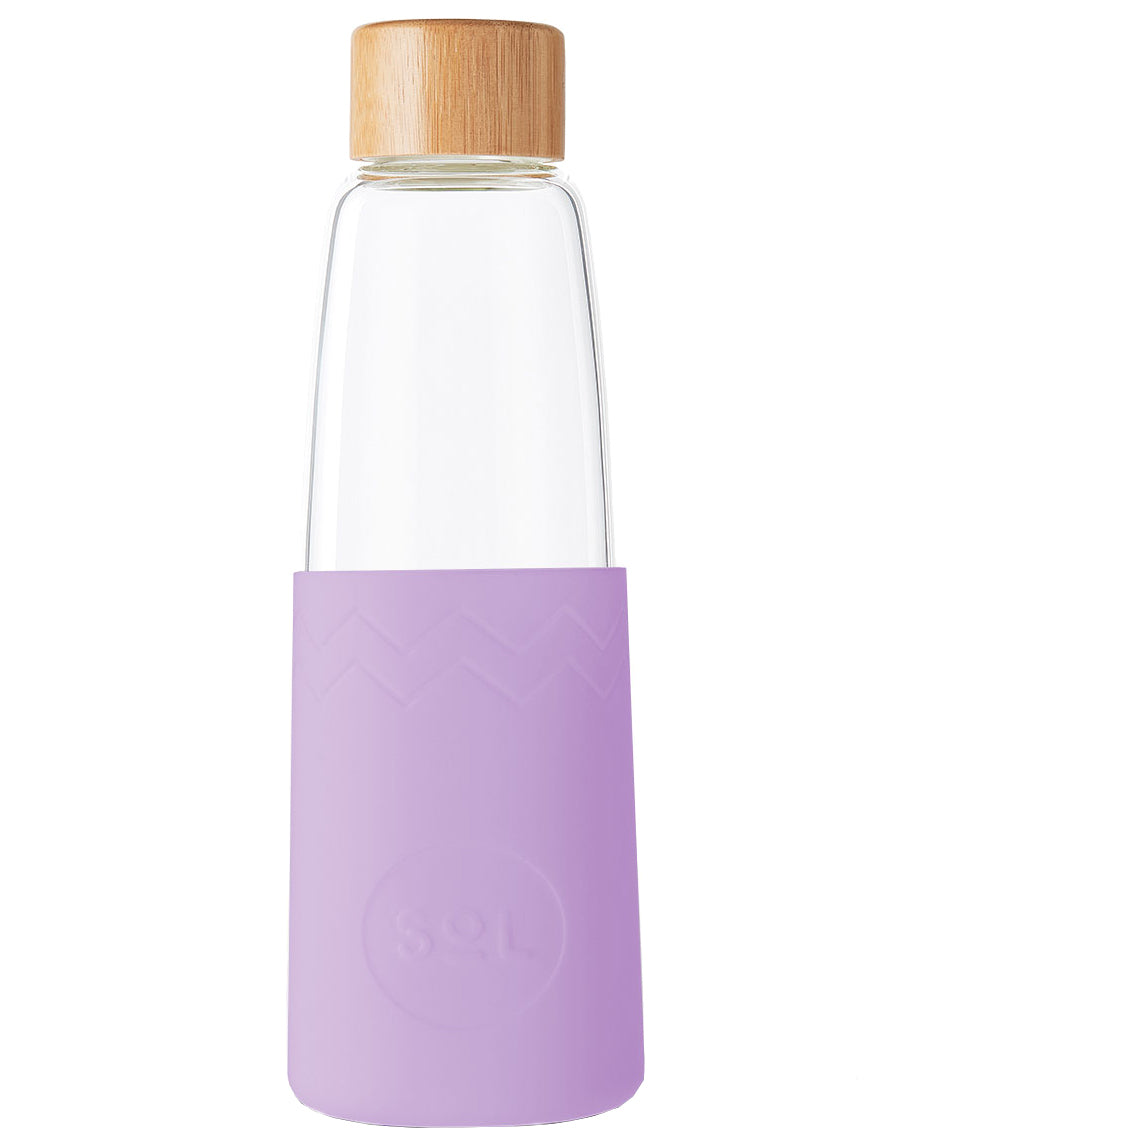 Lovely Lavender Glass Water Bottle